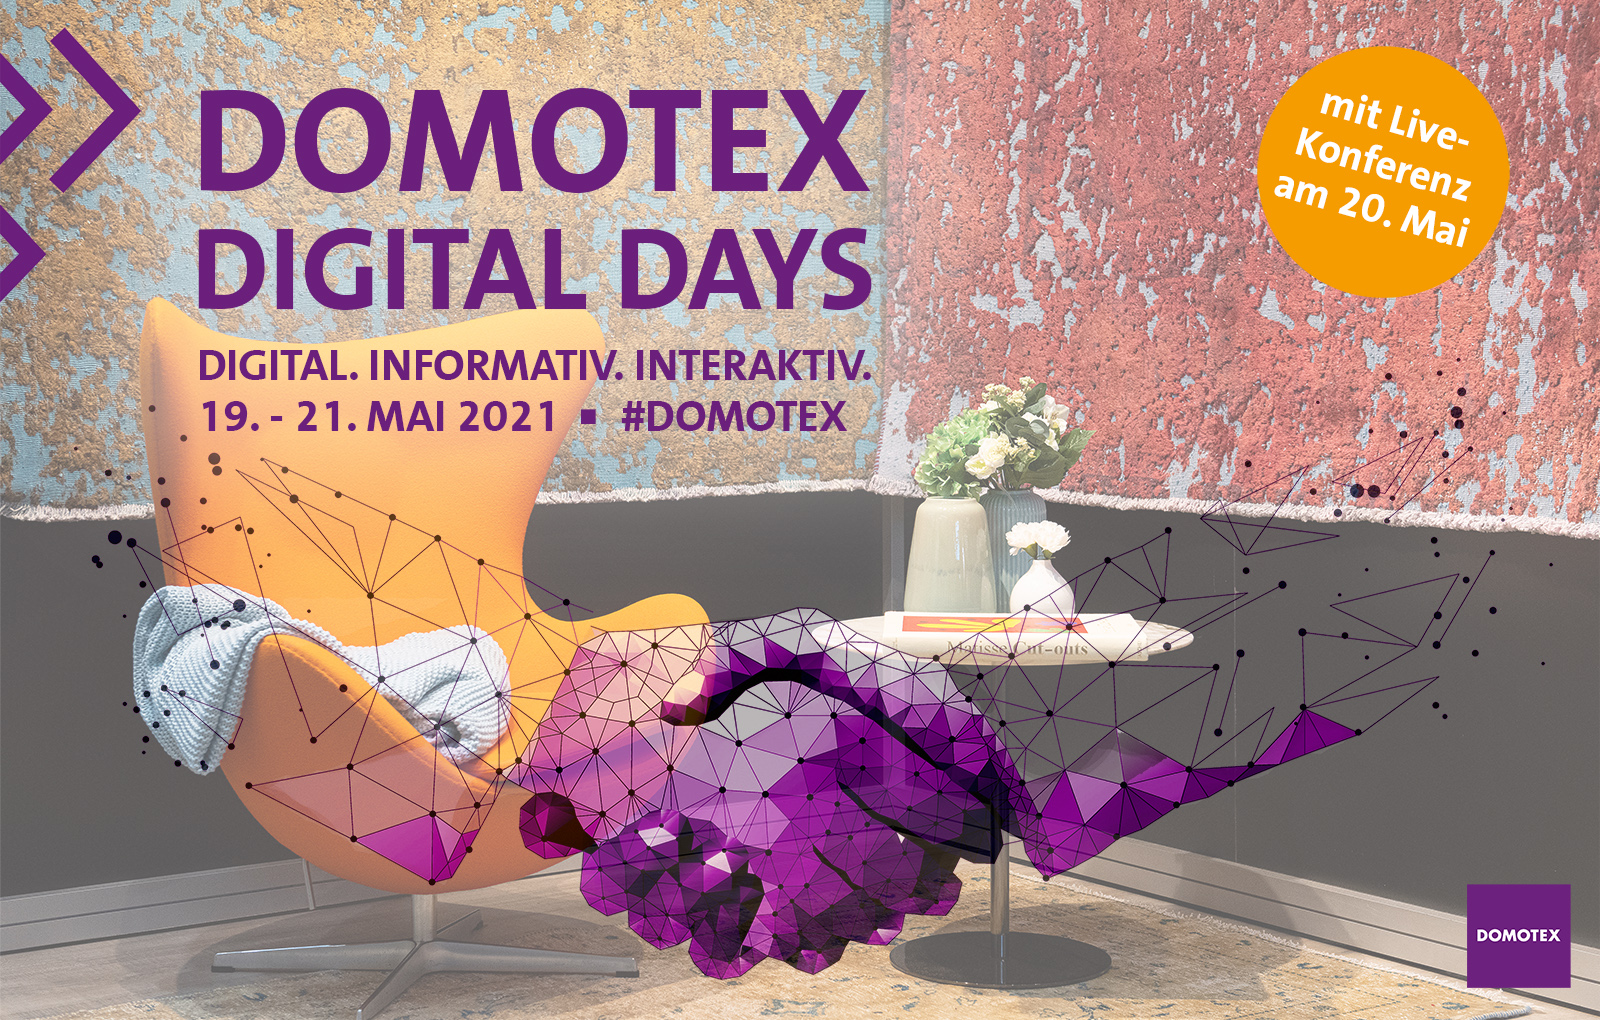  FussbodenTechnik-Umfrage zu den Domotex Digital Days